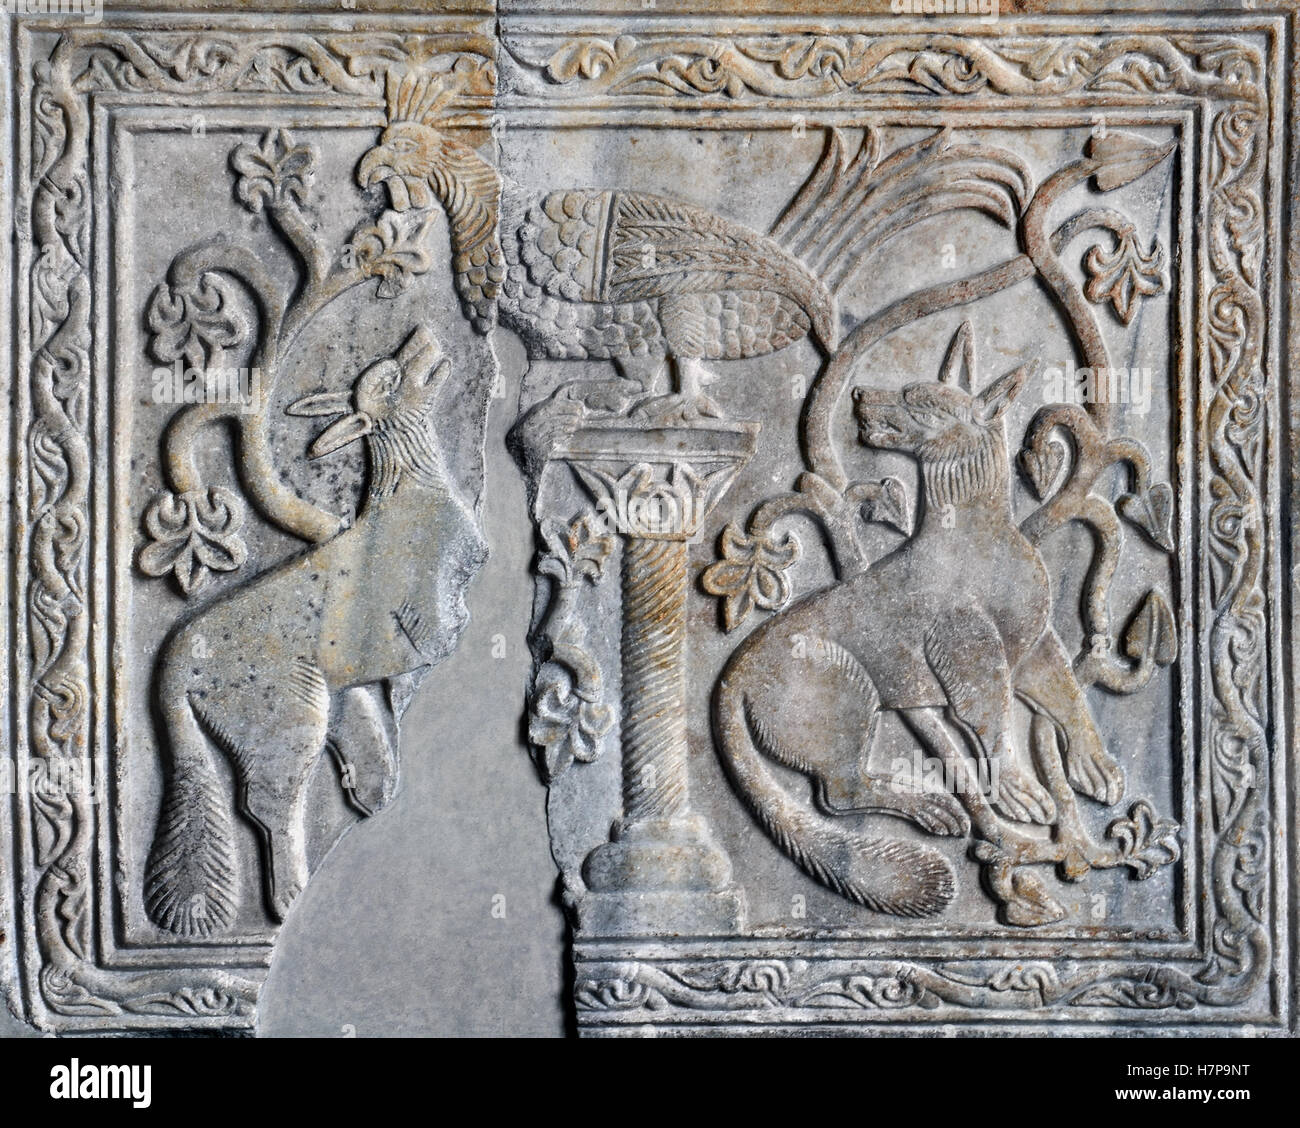 Fábulas Animal icono descarga antigua Constantinopla del siglo XIII Estambul Turquía Turquía Foto de stock